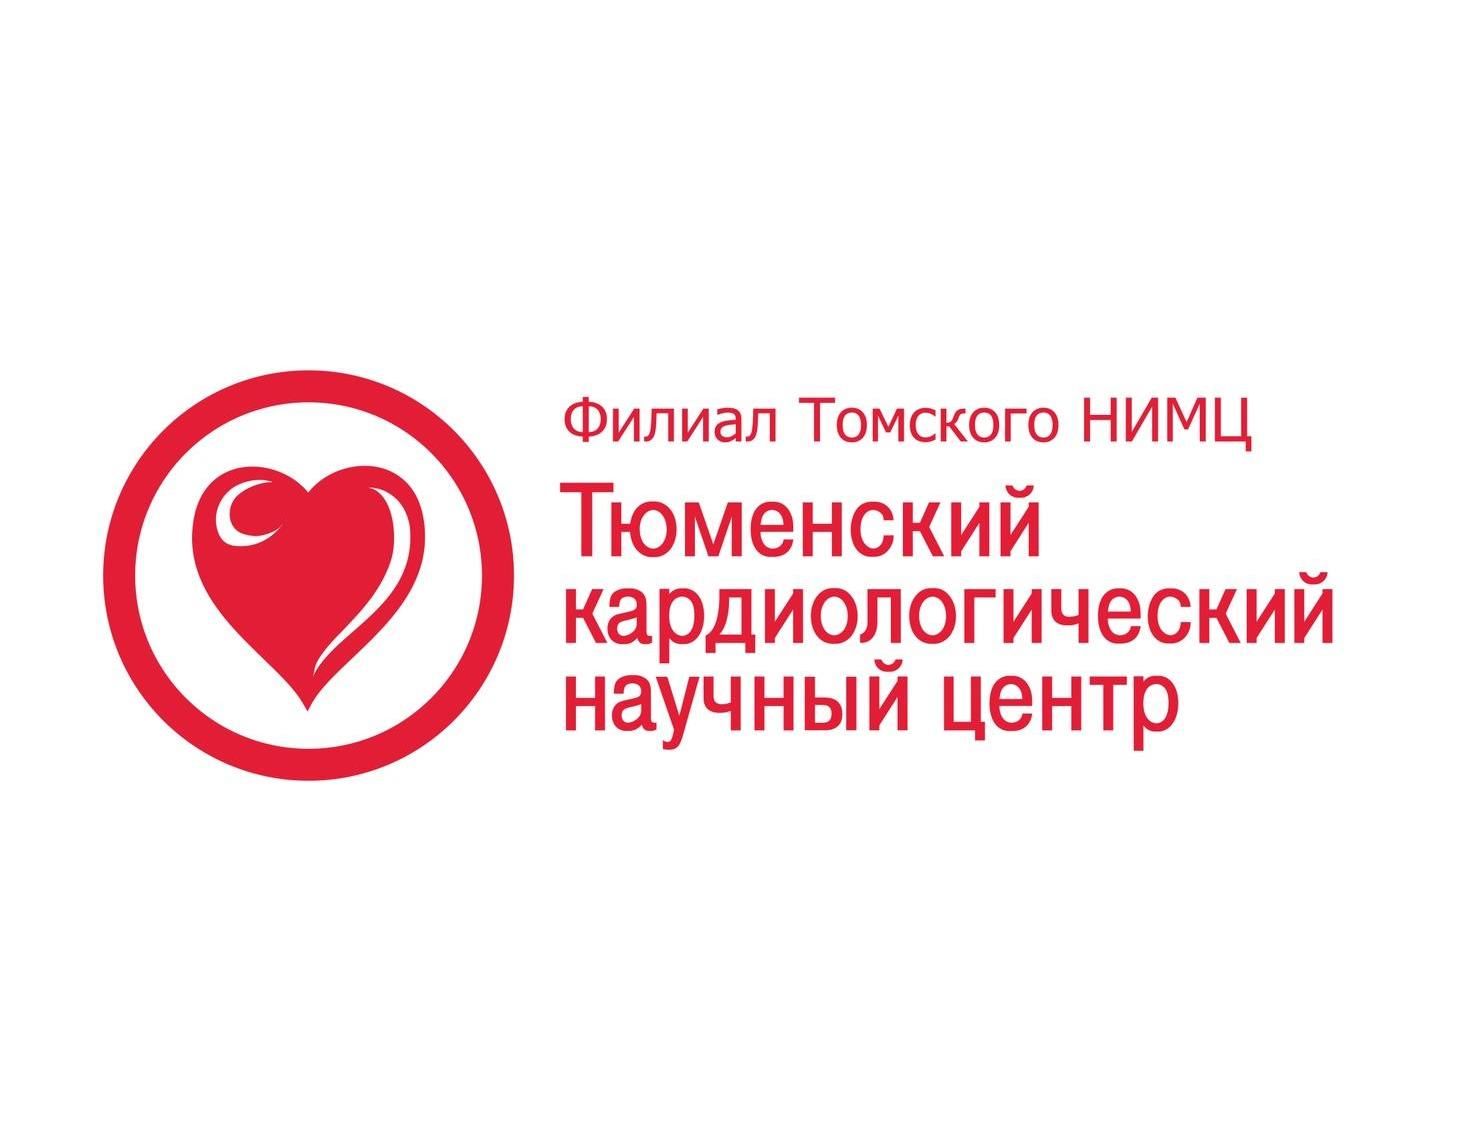 31 Международный конгресс Греческого кардиологического общества